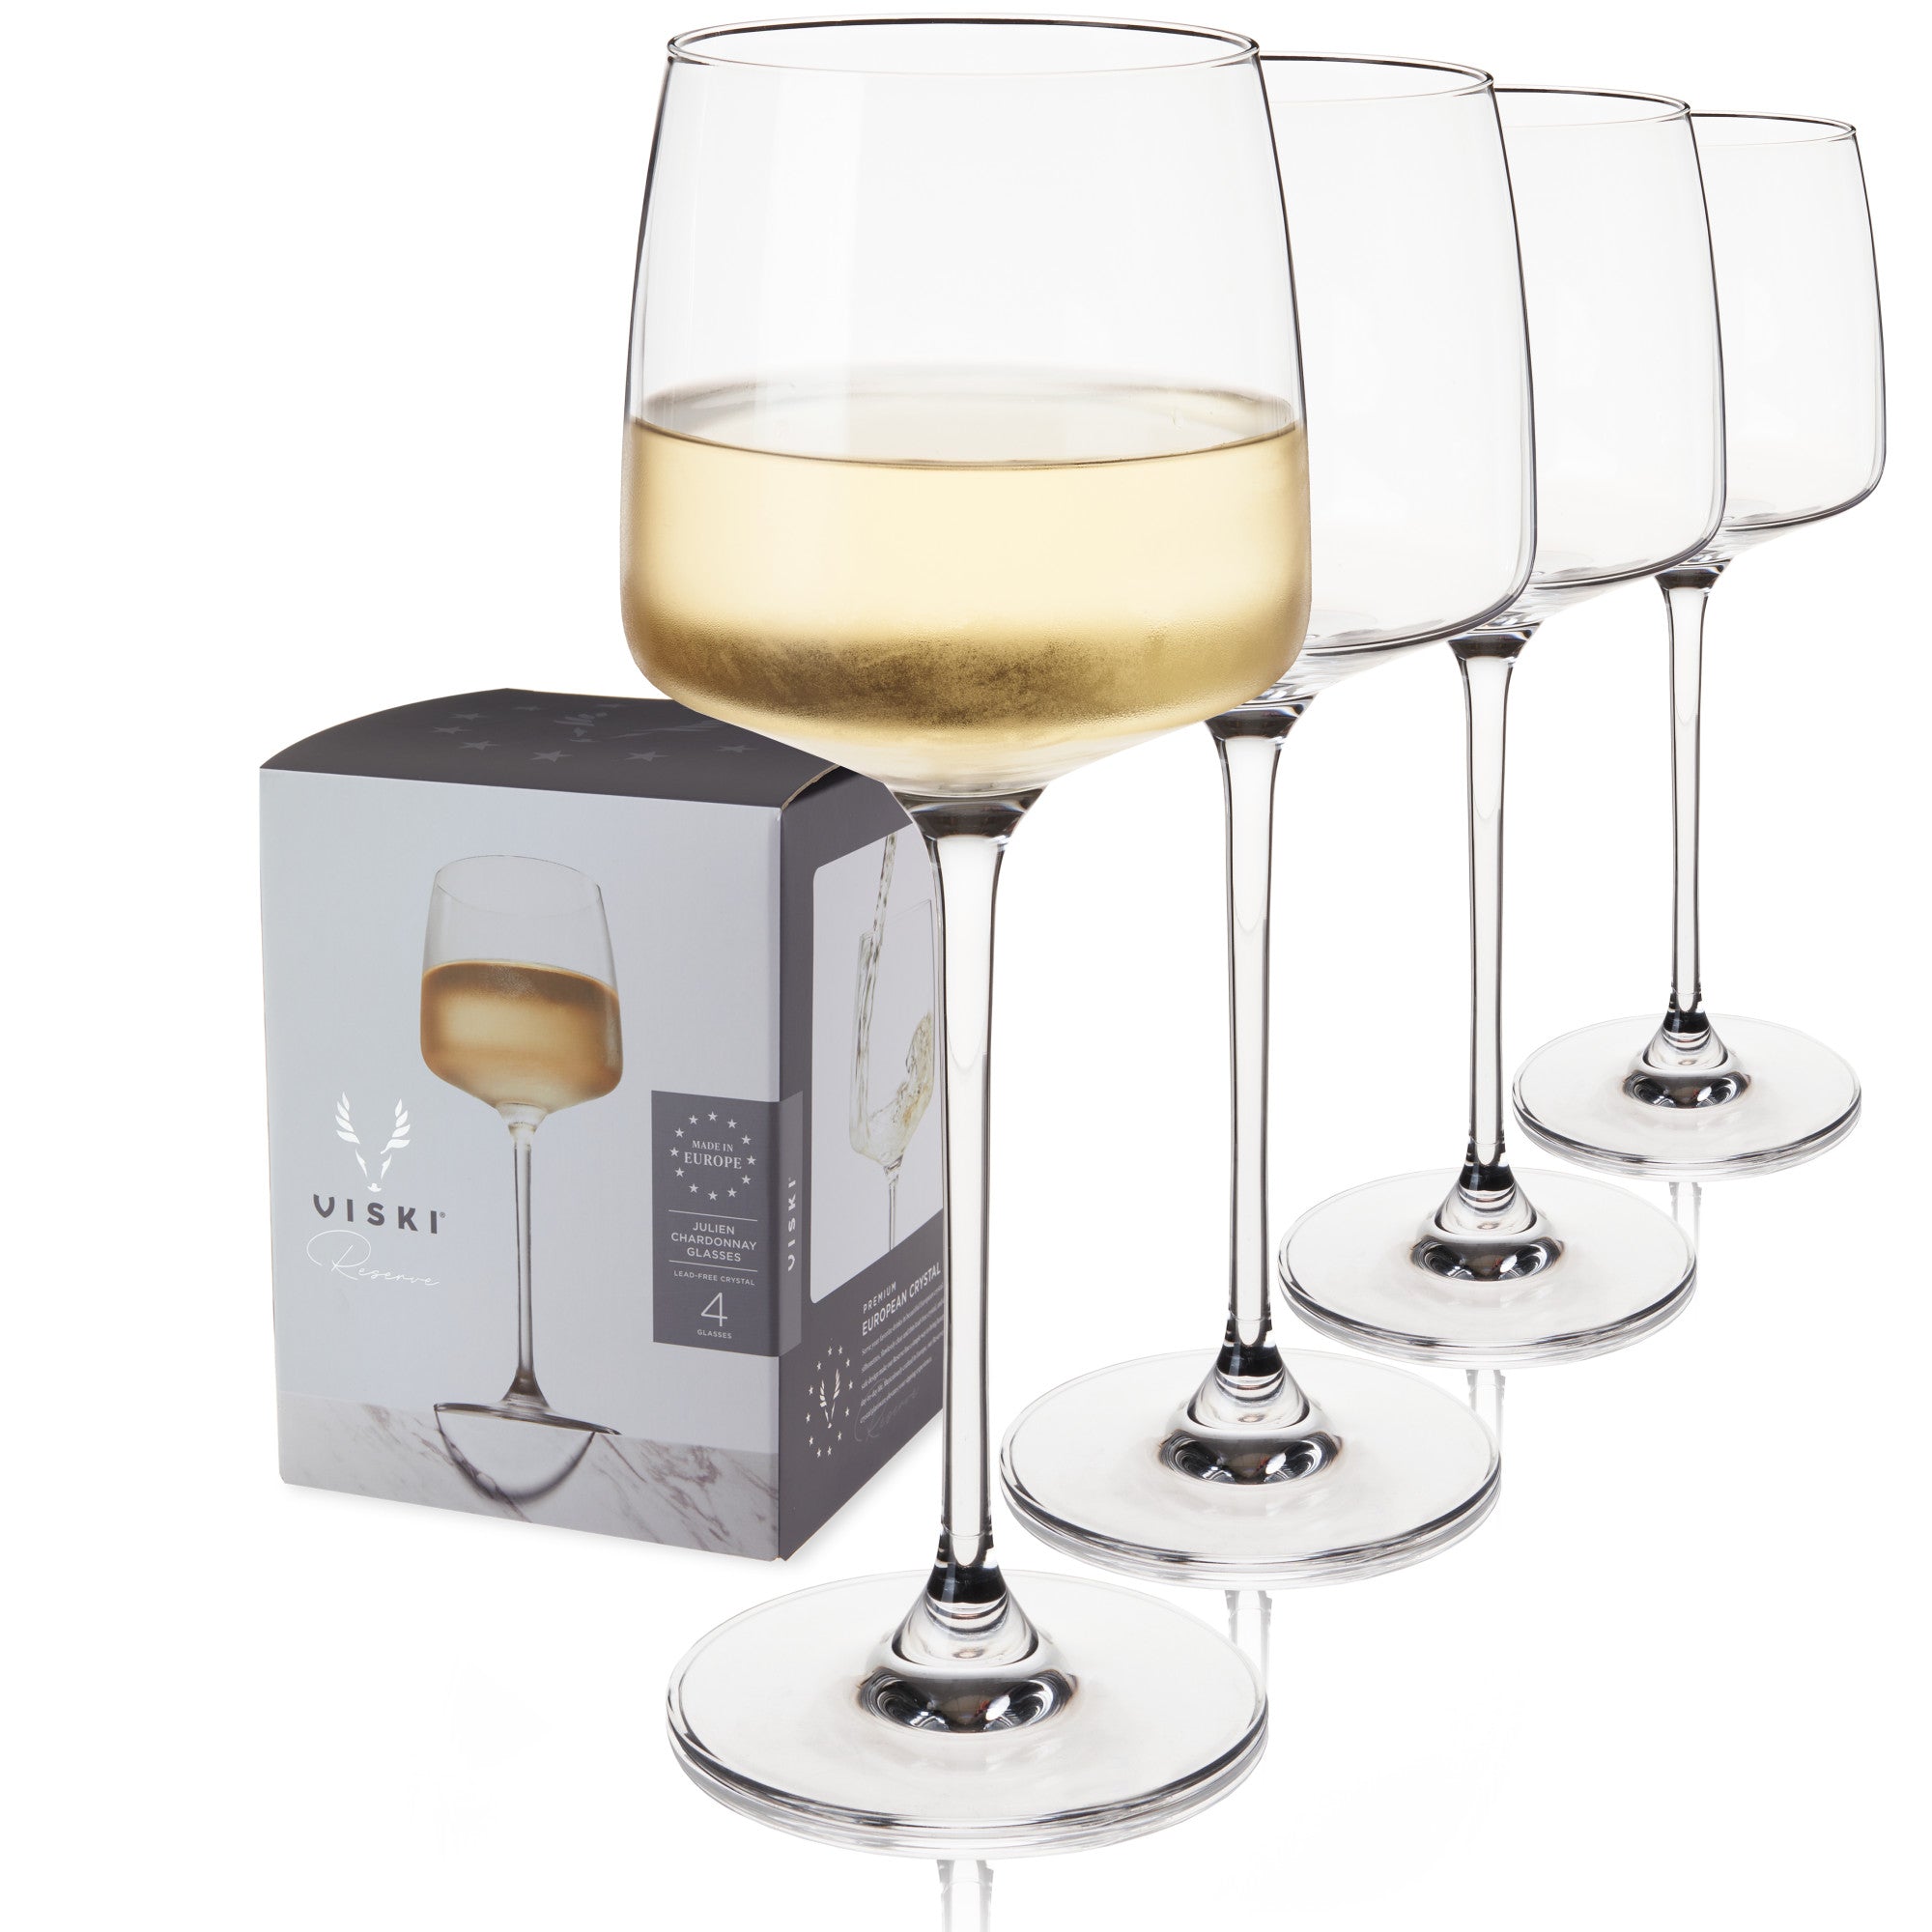 Reserve Julien Crystal Chardonnay Glasses By Viski (Set of 4)